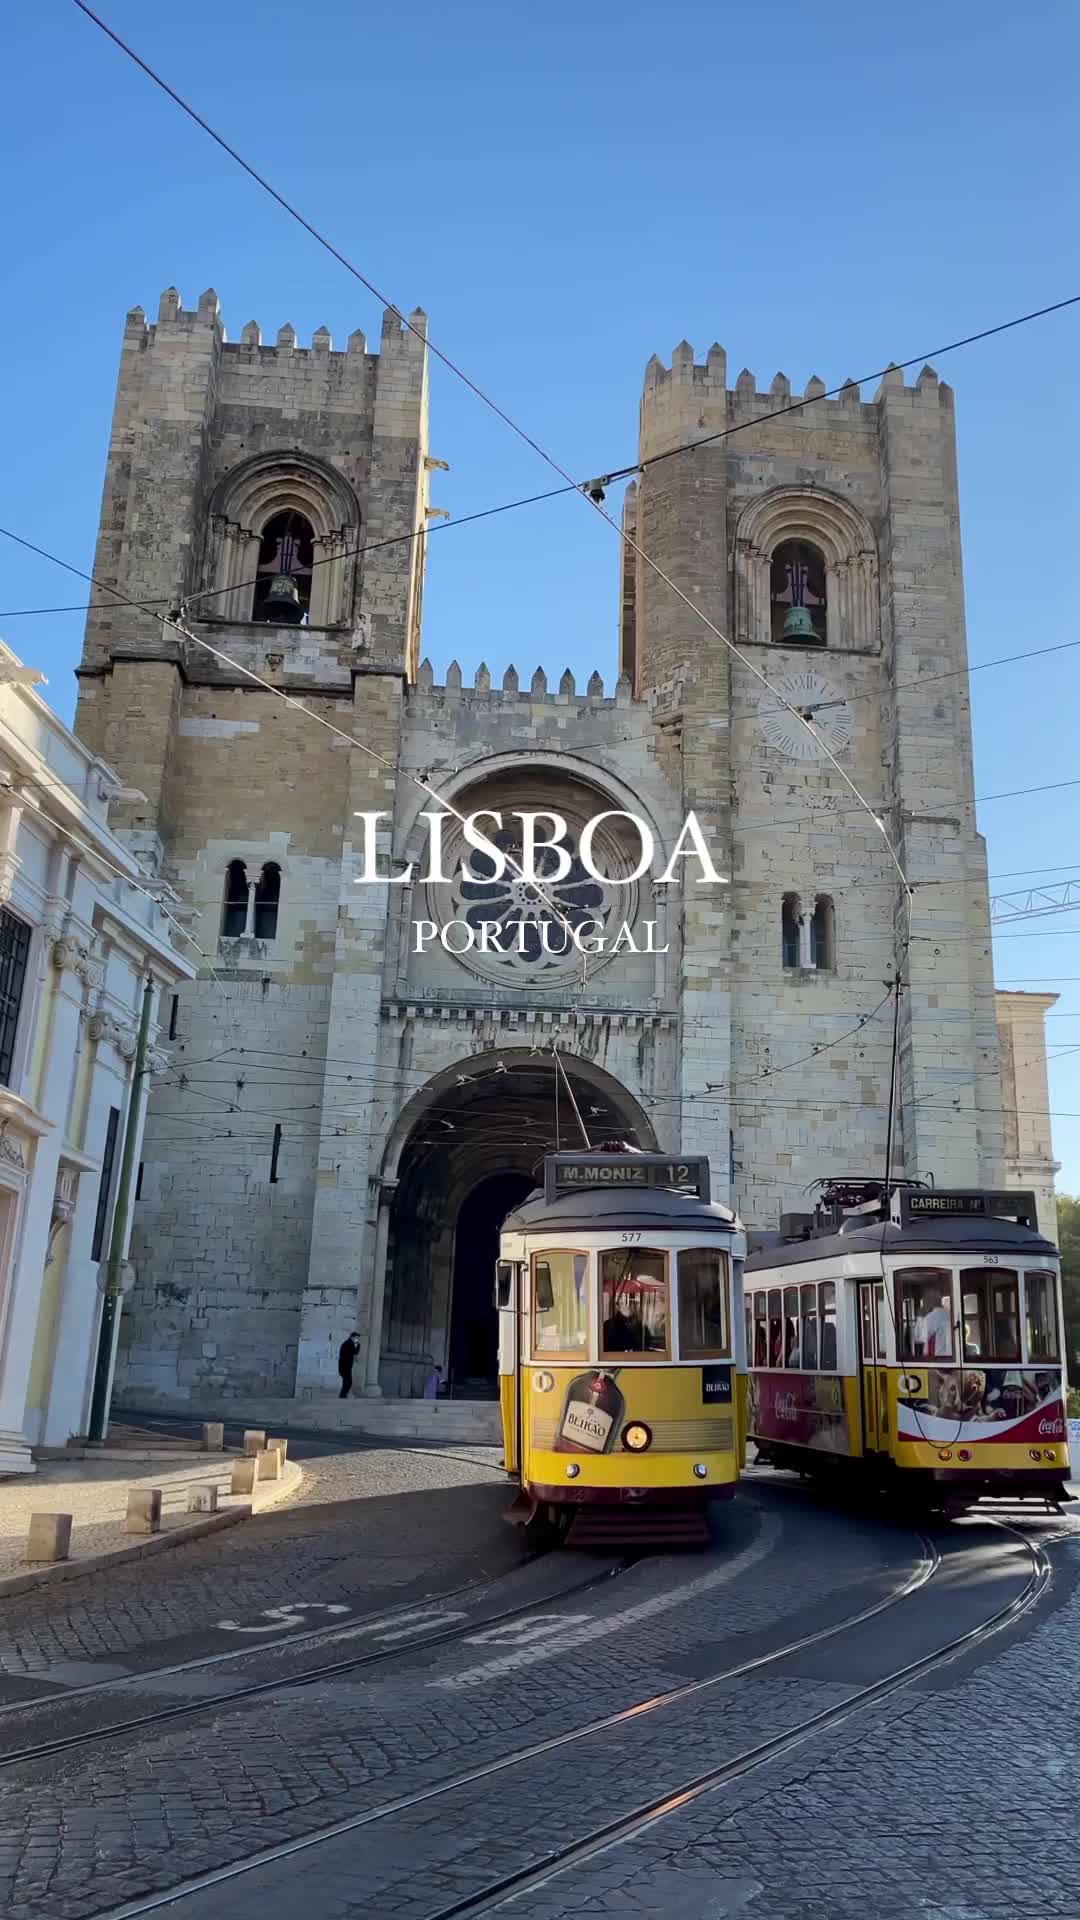 Lisboa 💛
Have a great Sunday 🤗

#lisboa #portugal #map_of_europe #worldplaces #wonderful_places #beautifuldestinations #travelingthroughtheworld